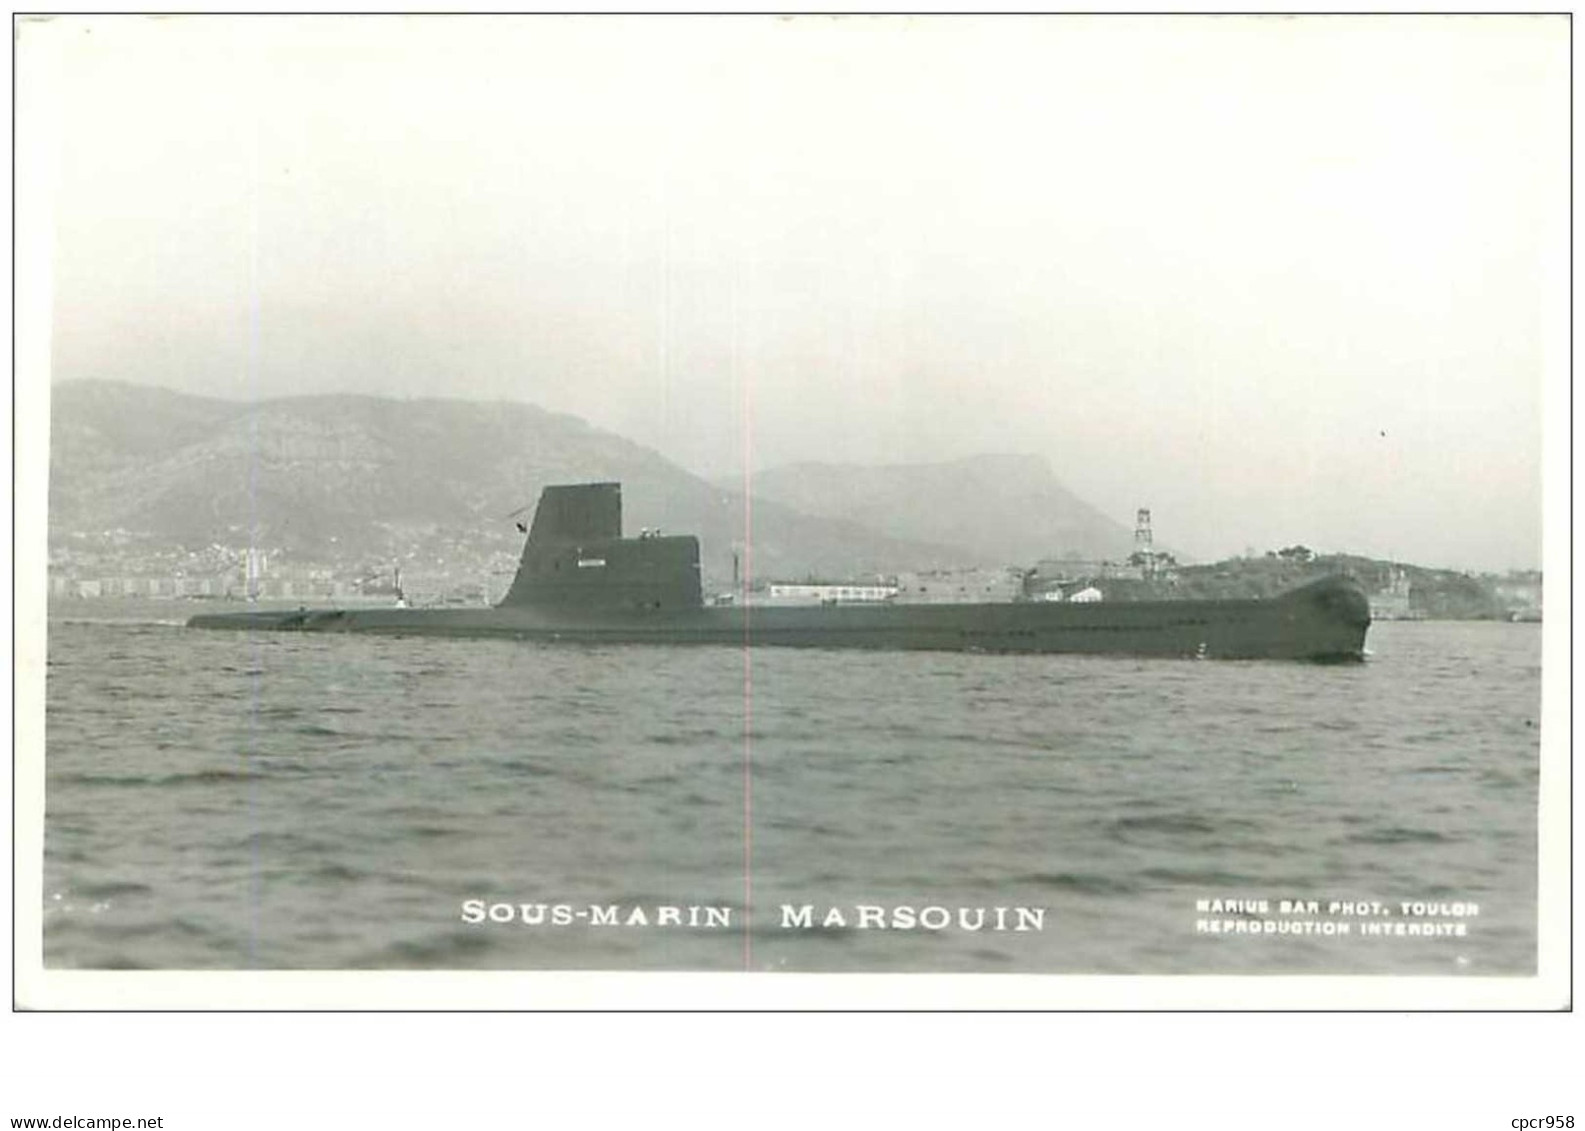 SOUS-MARINS.n°24851.PHOTO DE MARIUS BAR.MARSOUIN - Unterseeboote